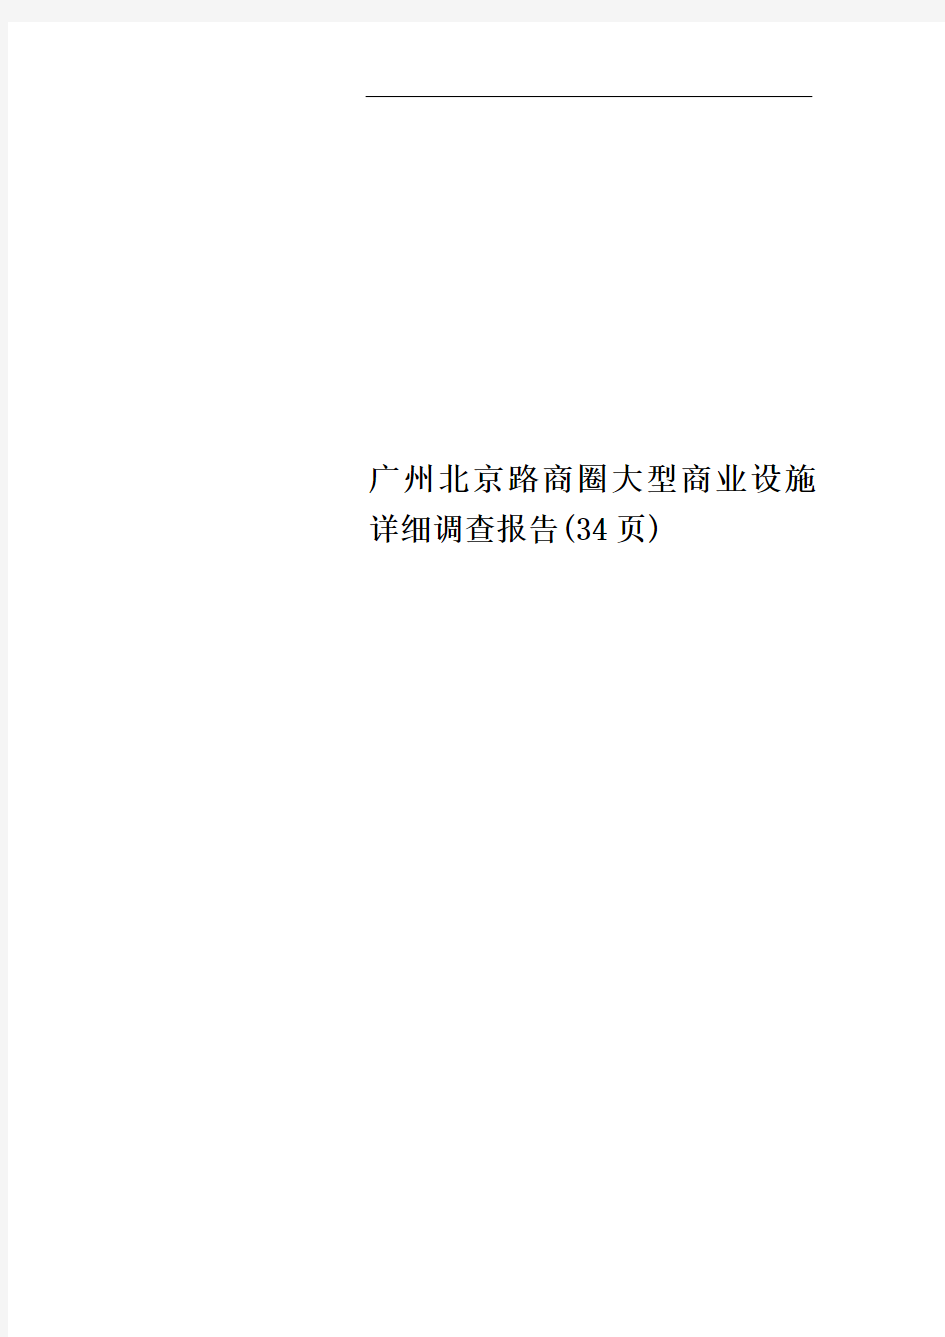 广州北京路商圈大型商业设施详细调查报告(34页)